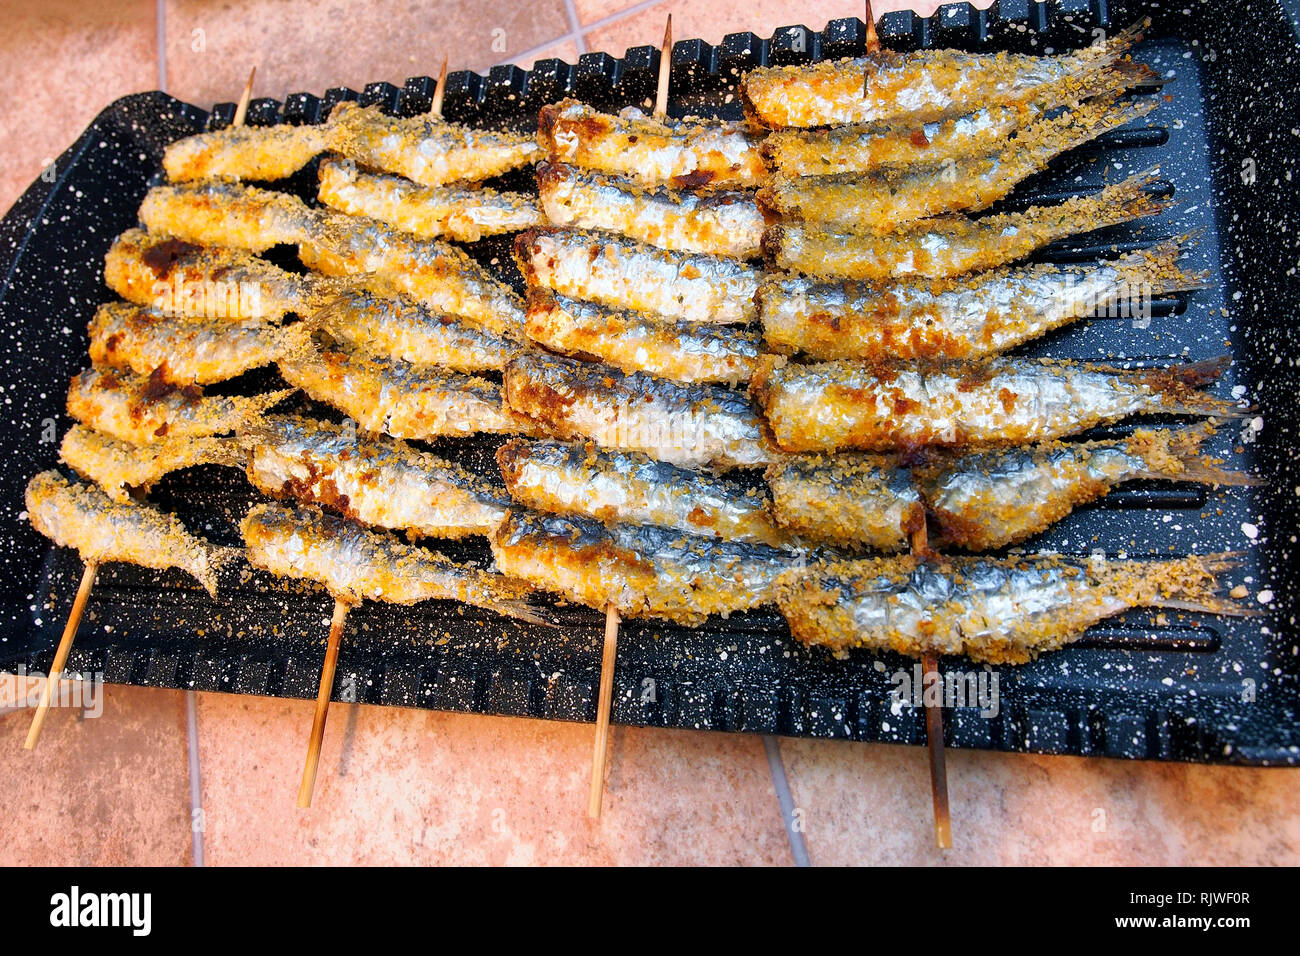 Street market alimentare. Spiedini di pesce alla griglia con le acciughe. Foto Stock